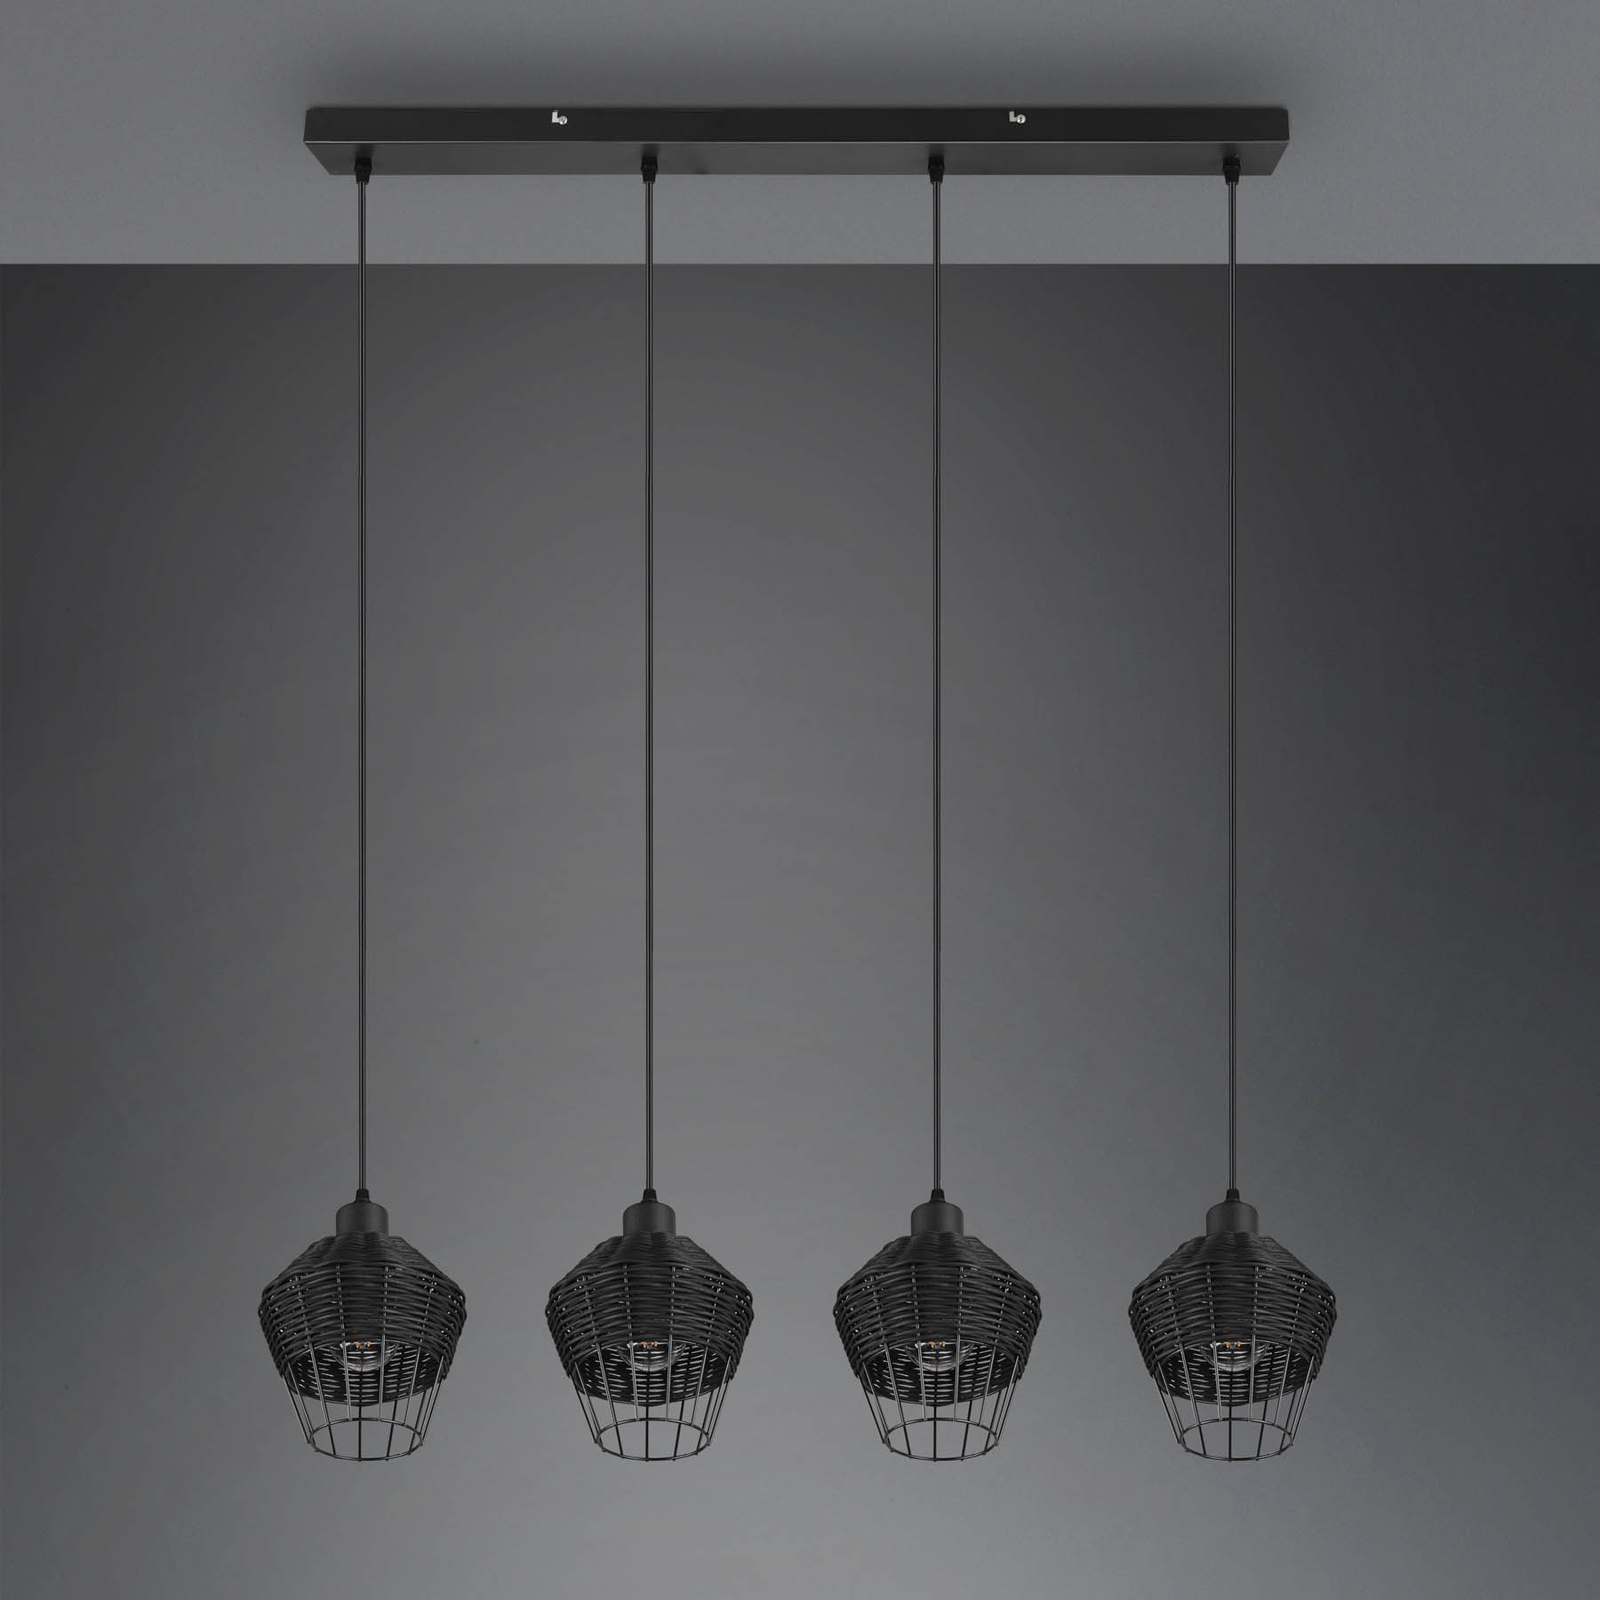 Hanglamp Borka, 4-lamps, zwart